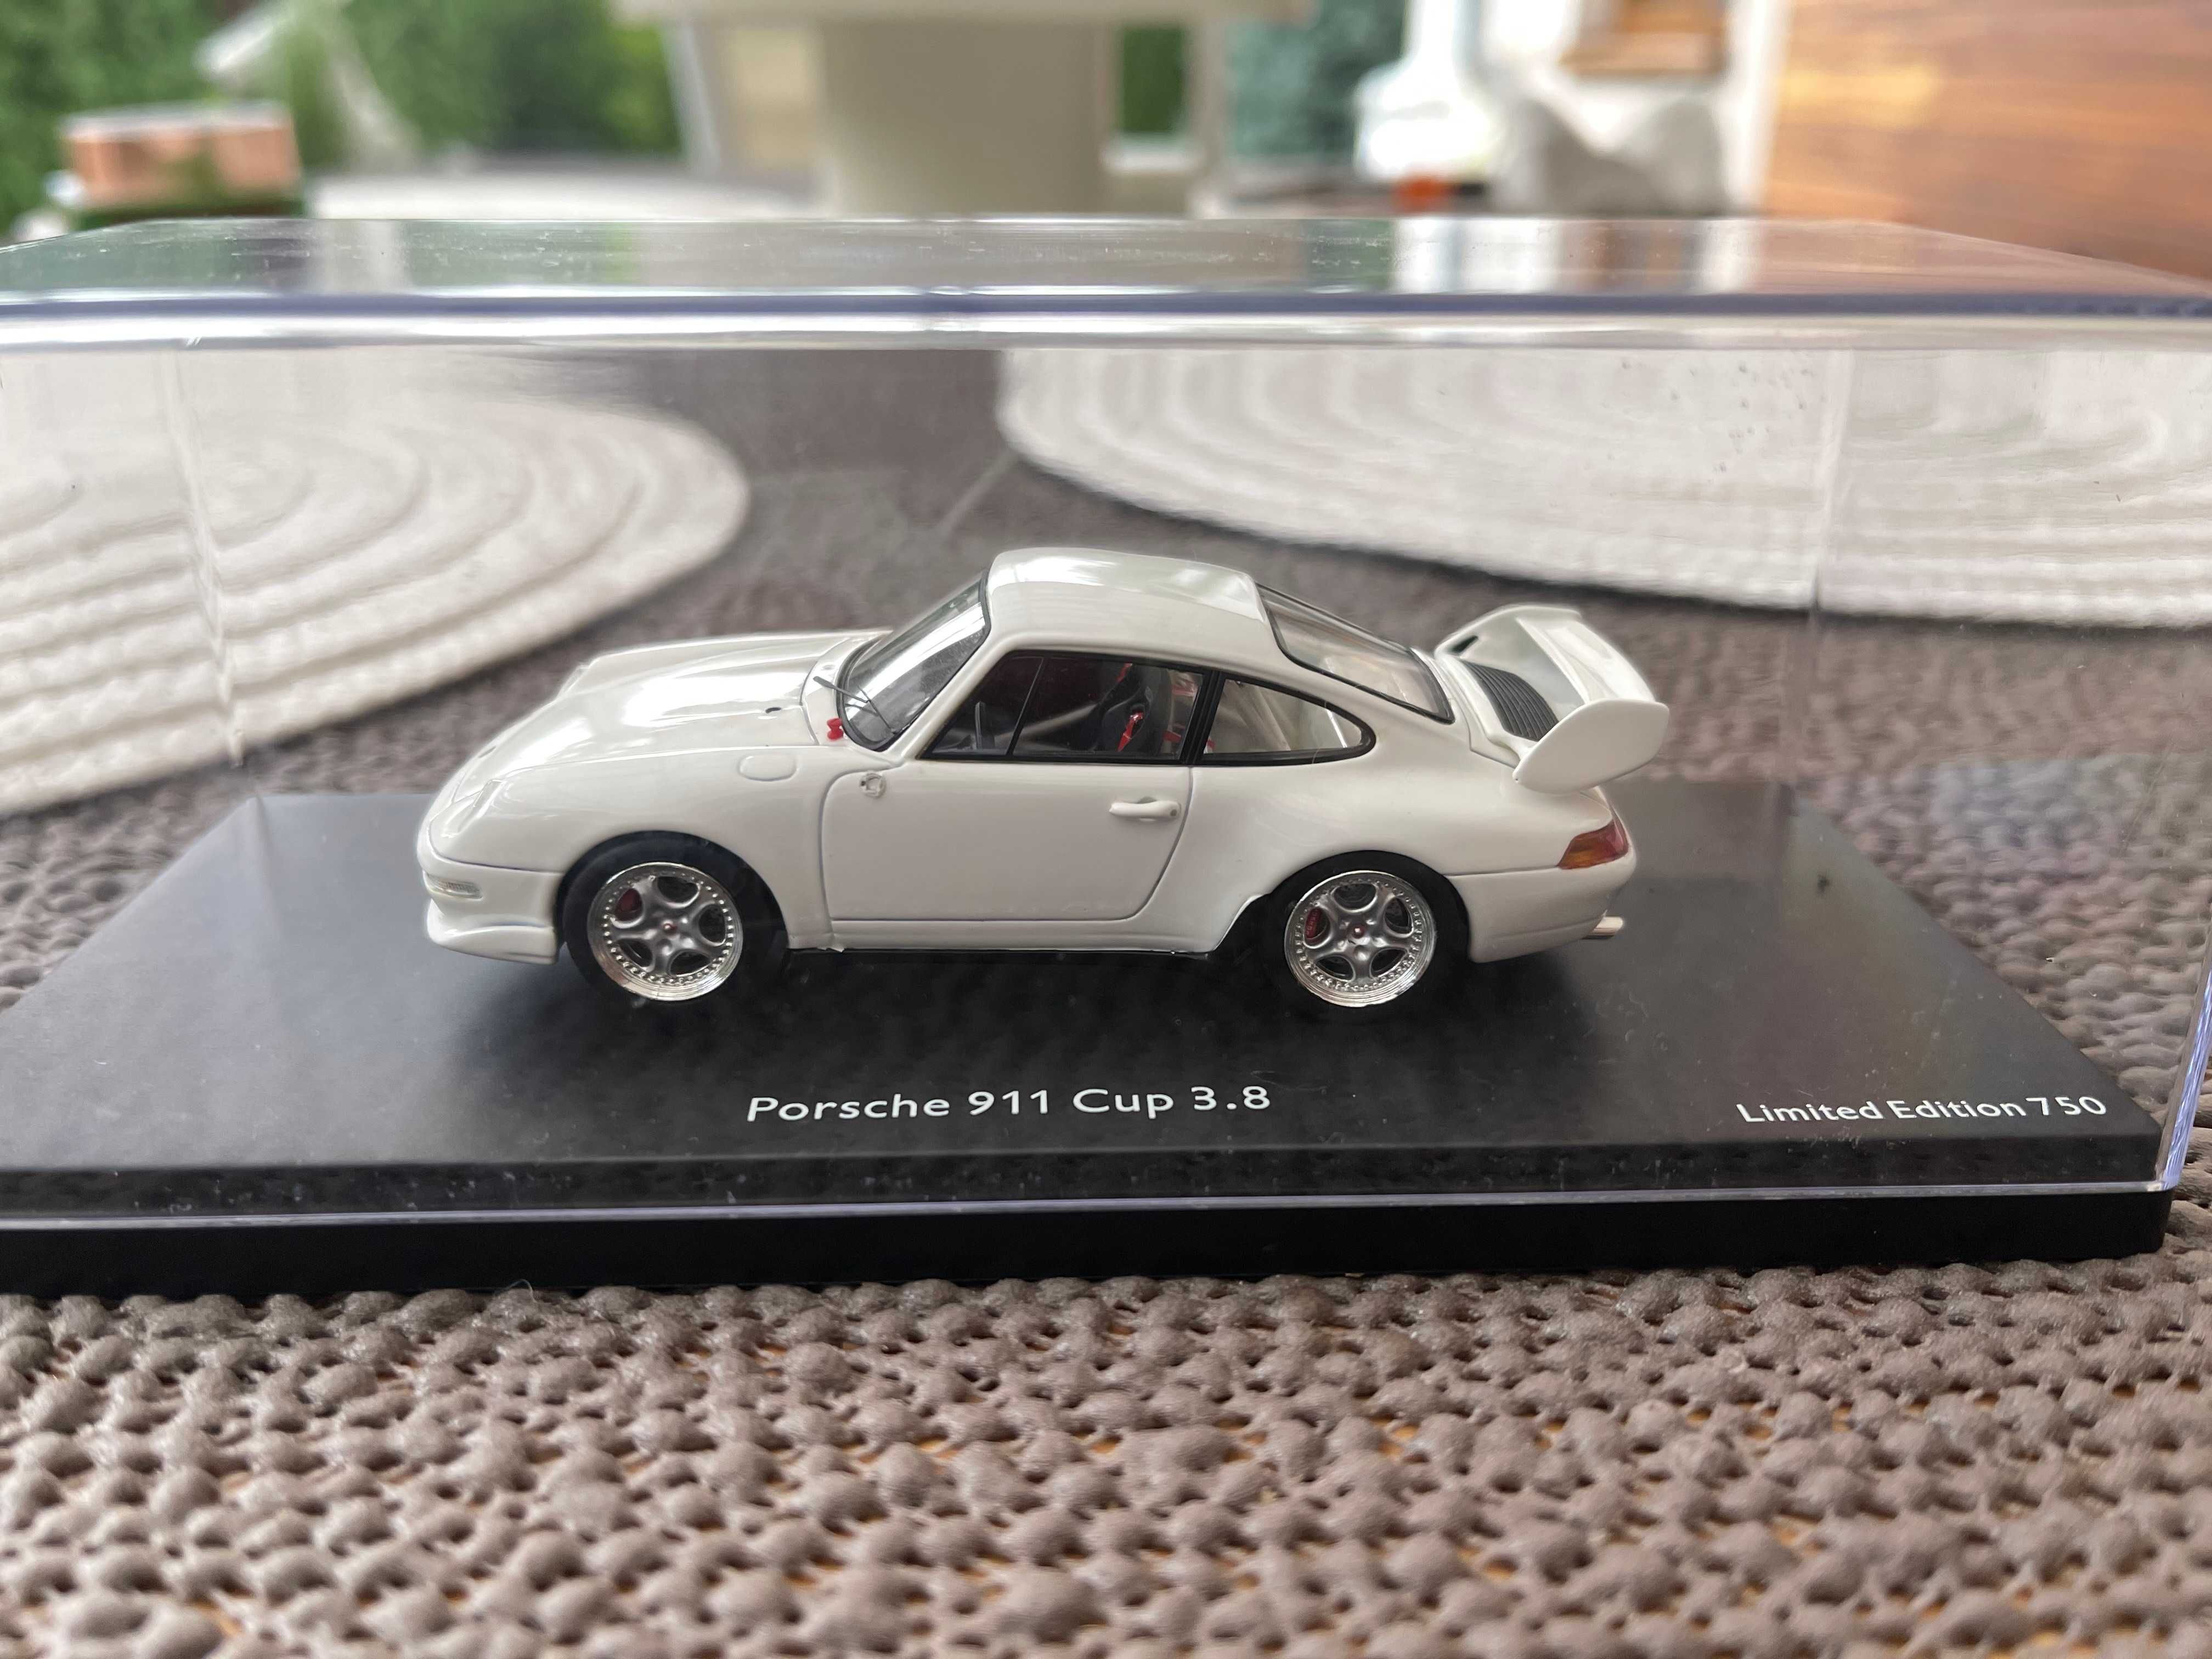 Model samochodu Porsche 911 Cup 3.8 Limitowana edycja Schuco 1:43